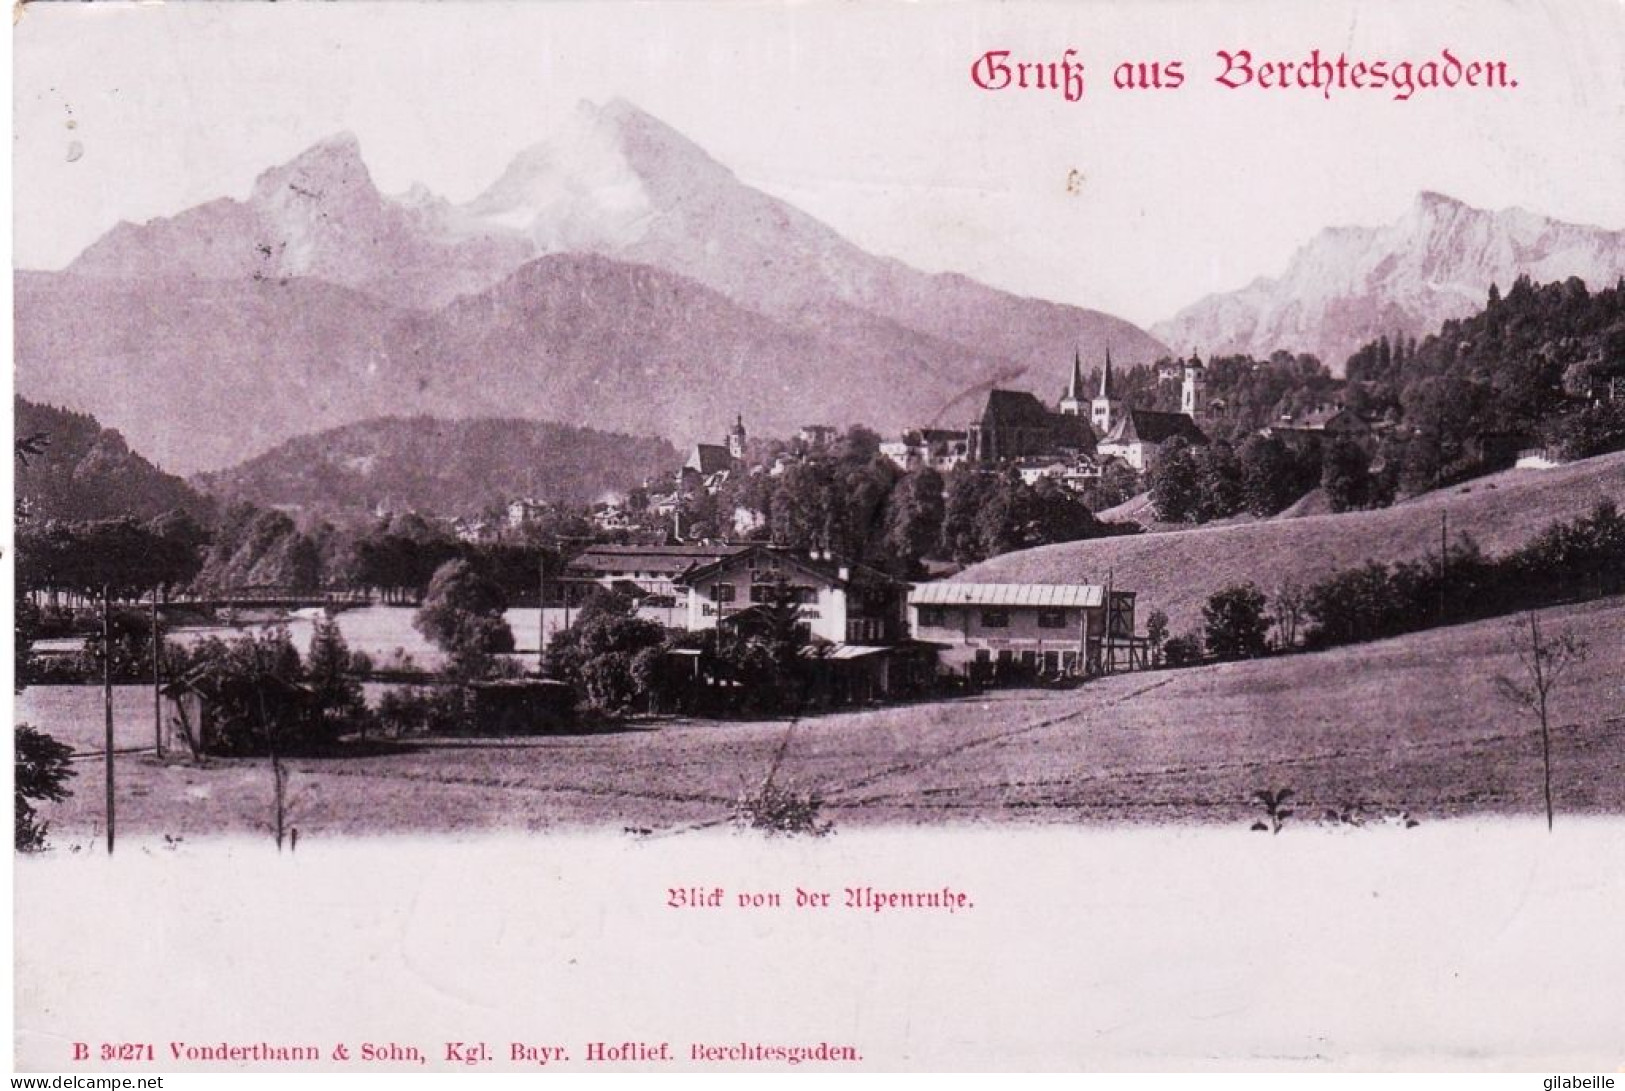 Deutschland - Gruss Aus BERCHTESGADEN - Blid Von Der Ulpenruhe - Berchtesgaden